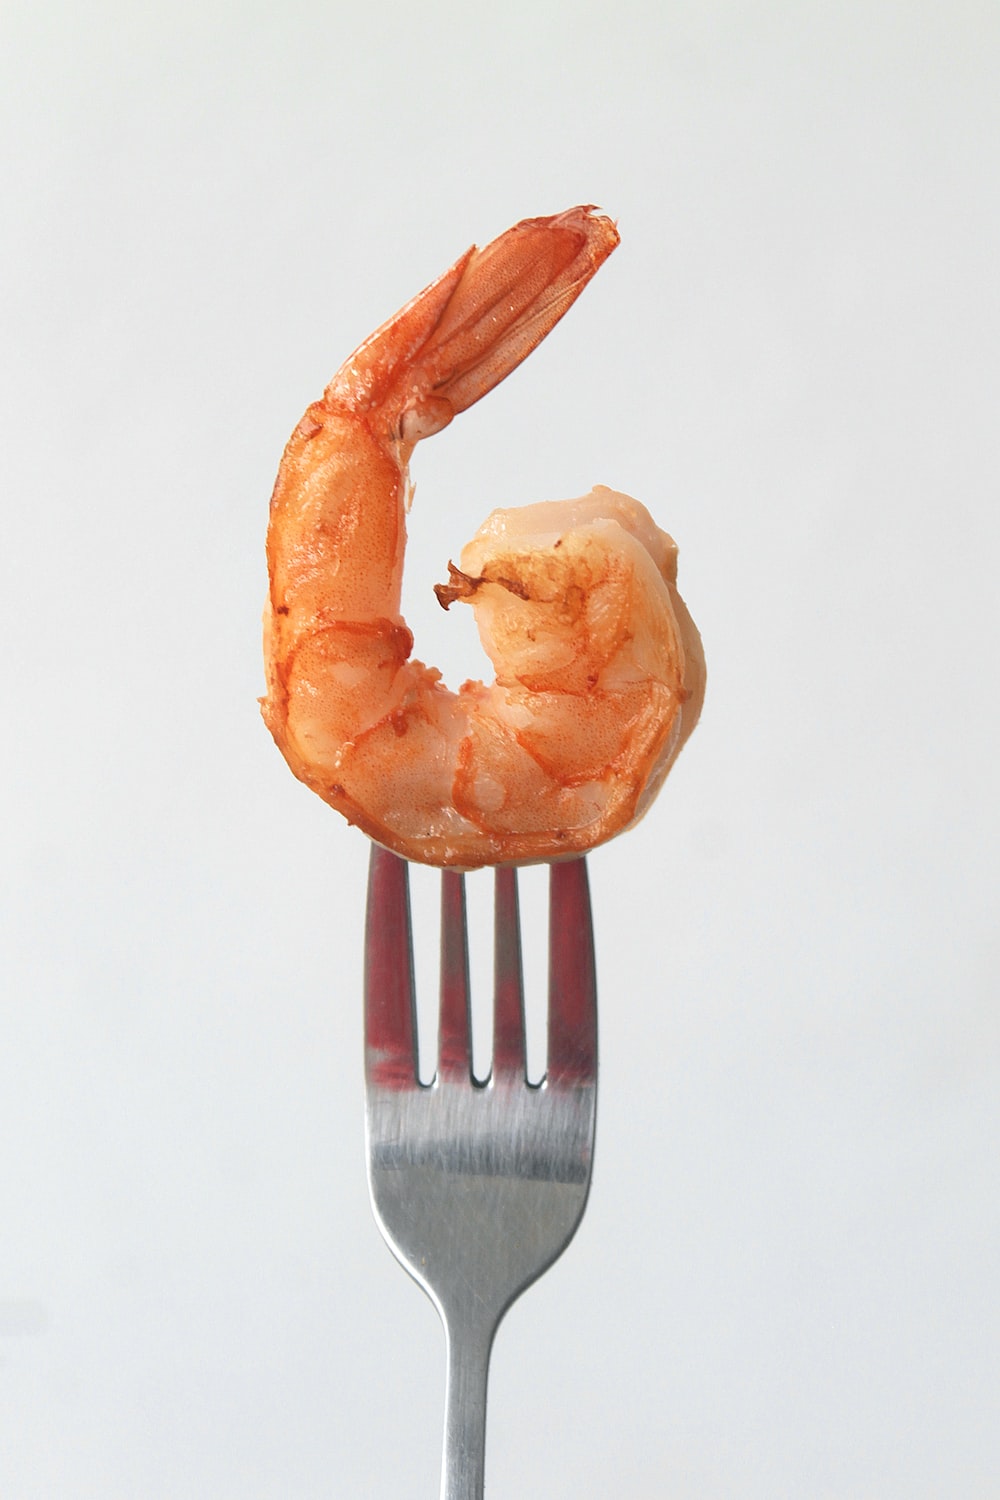 1000+ Shrimp Pictures | Download Free Images on Unsplash